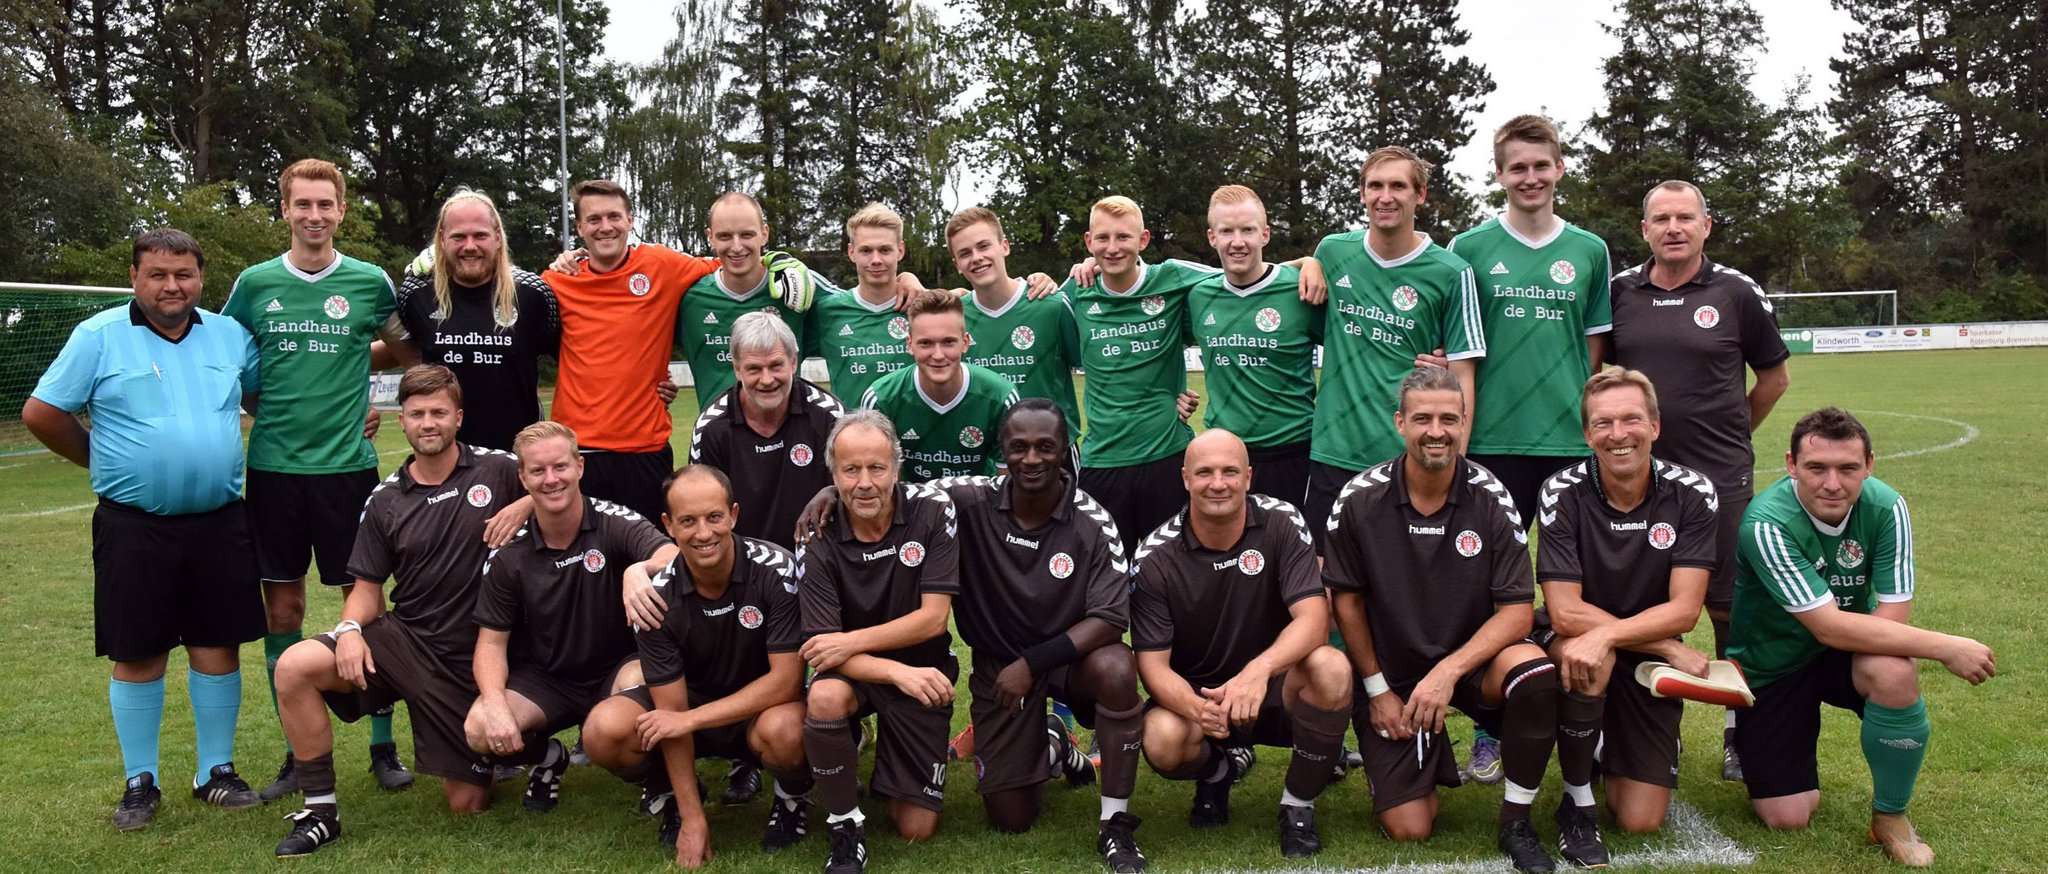 Die neu gegründete Spielgemeinschaft Hamersen/Sittensen hatte die Altstars des FC St. Pauli zu einem Freundschaftsspiel zu Gast.